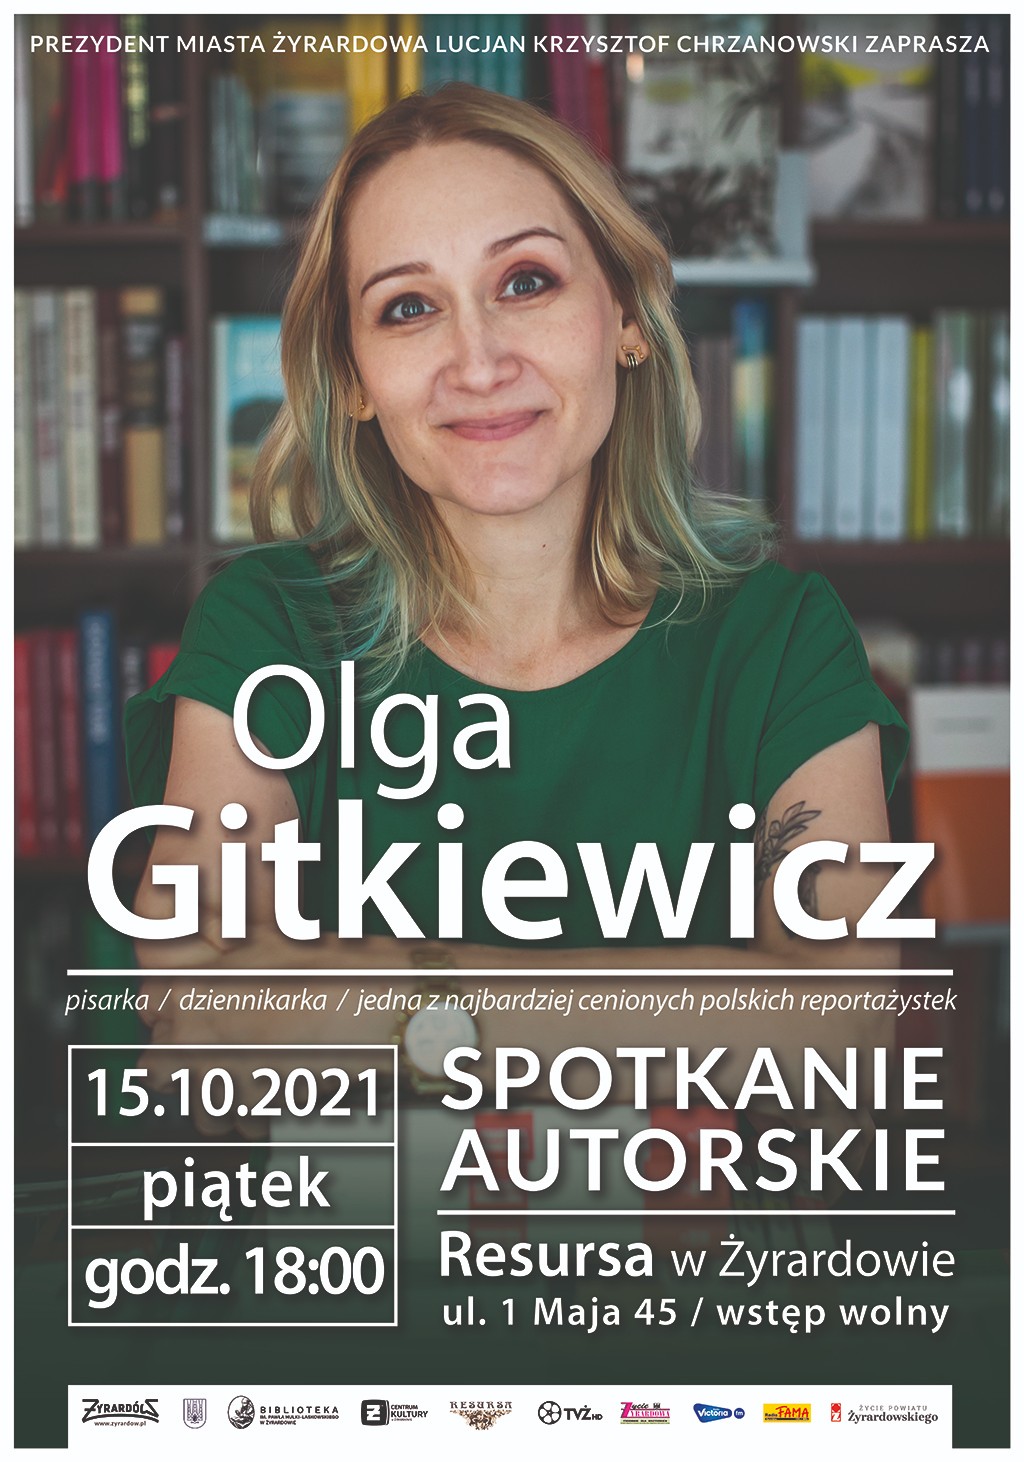 Plakat Spotkanie autorskie Olga Gitkiweicz zdjęcie autorki